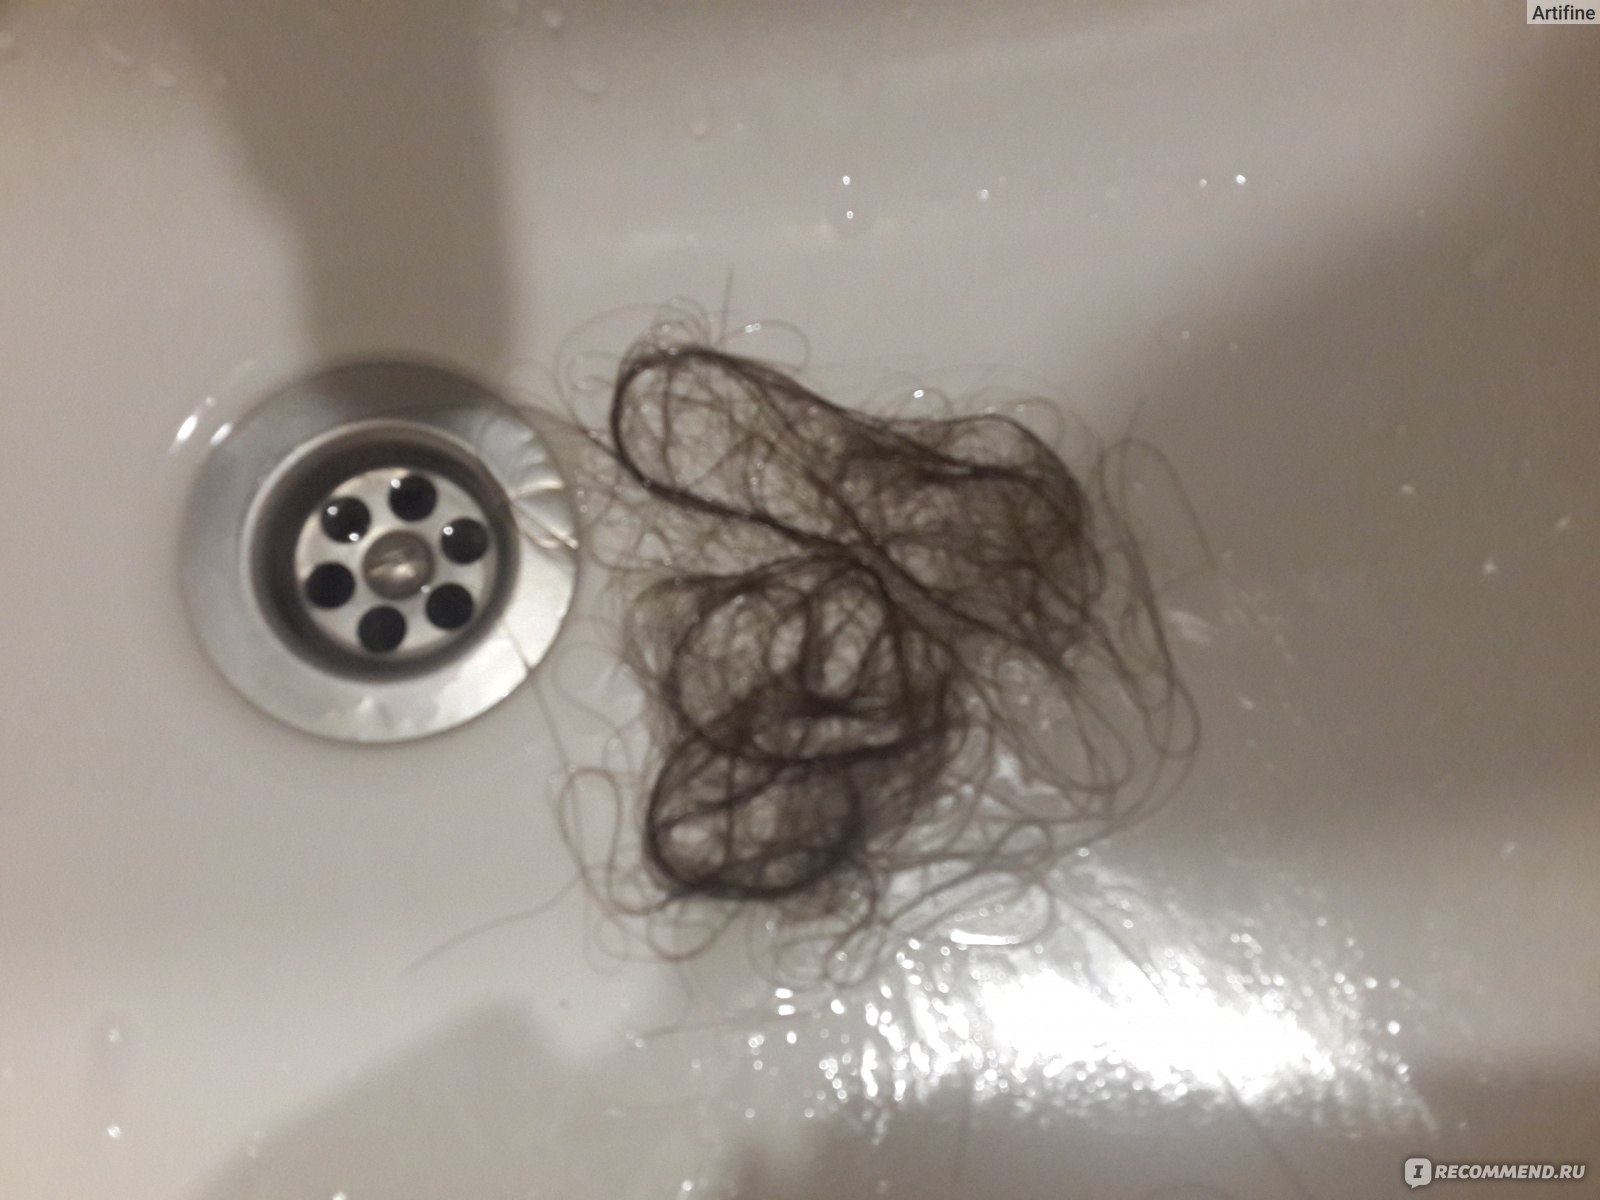 Выпадают волосы во время мытья. Выпадает много волос при мытье. После мытья выпадает около 100 волос. Ванной много волос выпало.